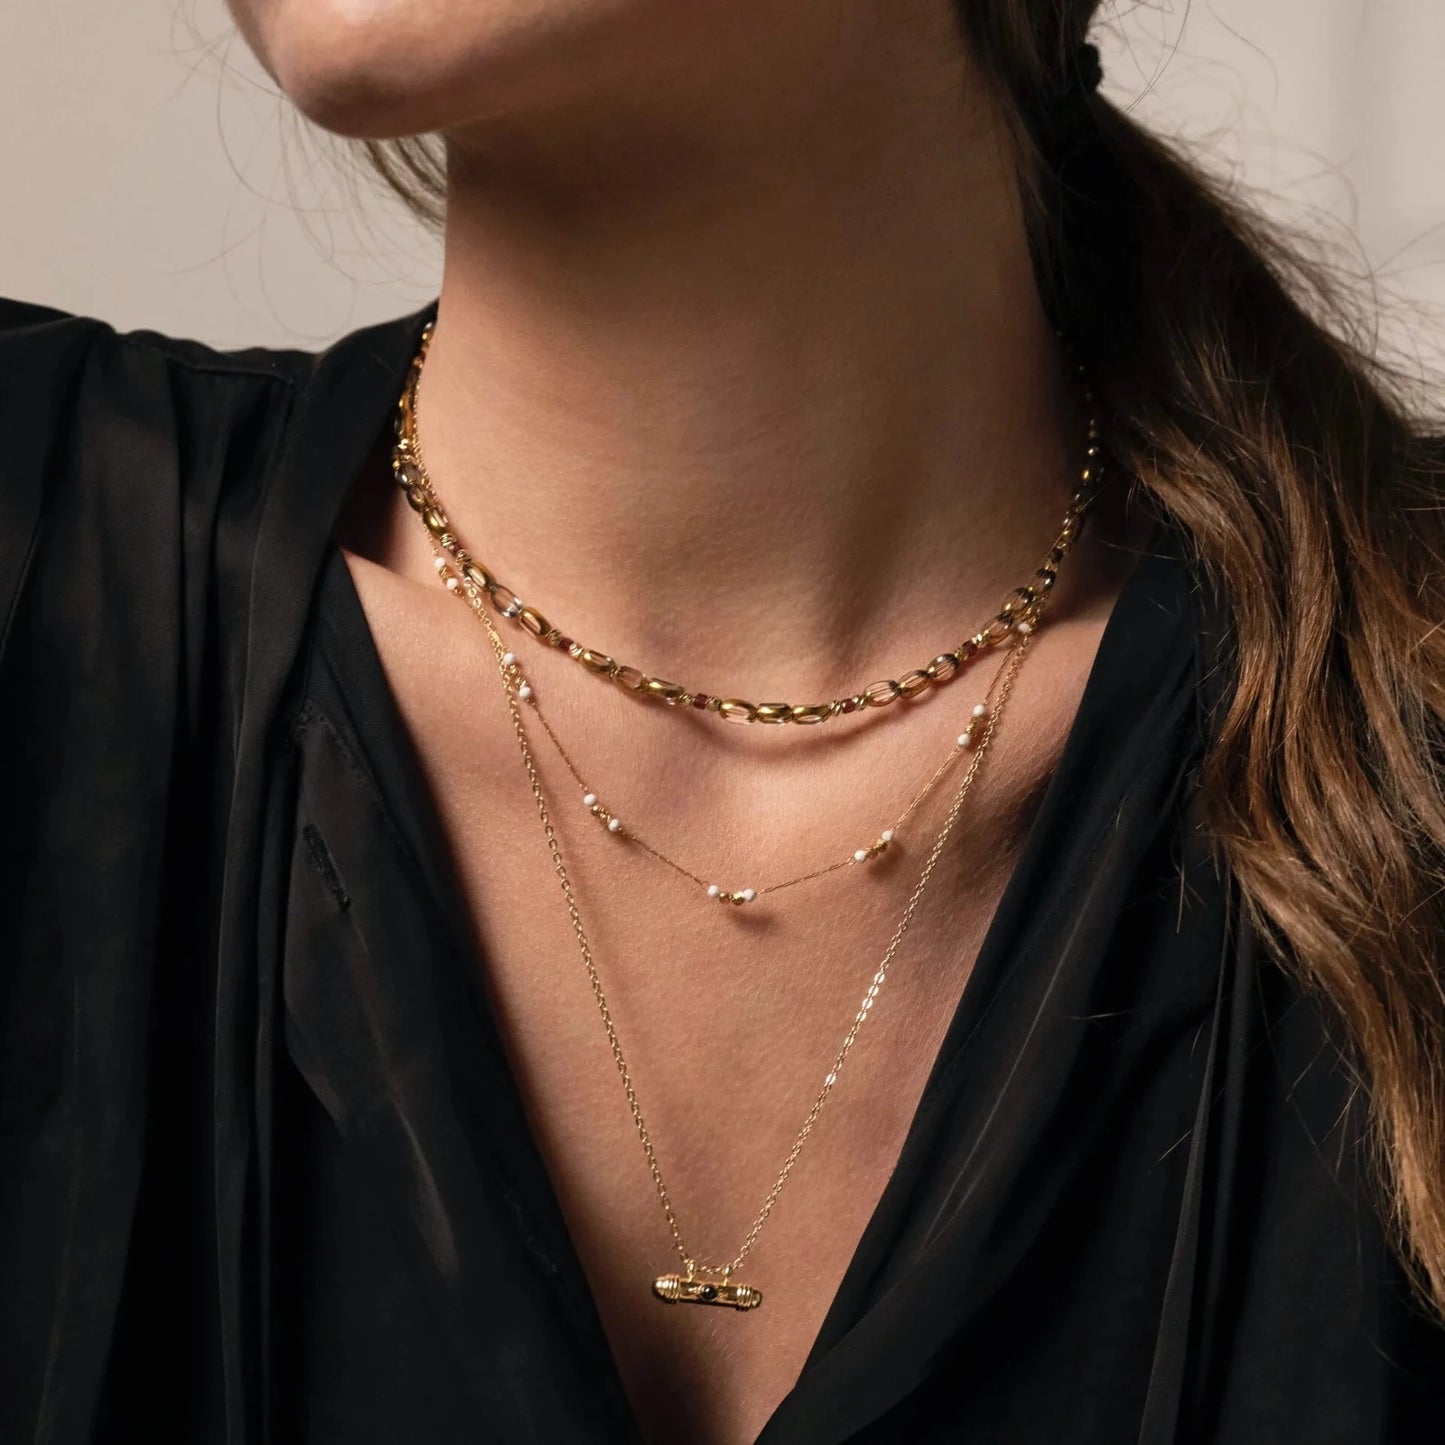 femme au chemisier noir portant deux colliers en perles et une chaine dorée avec médaillon